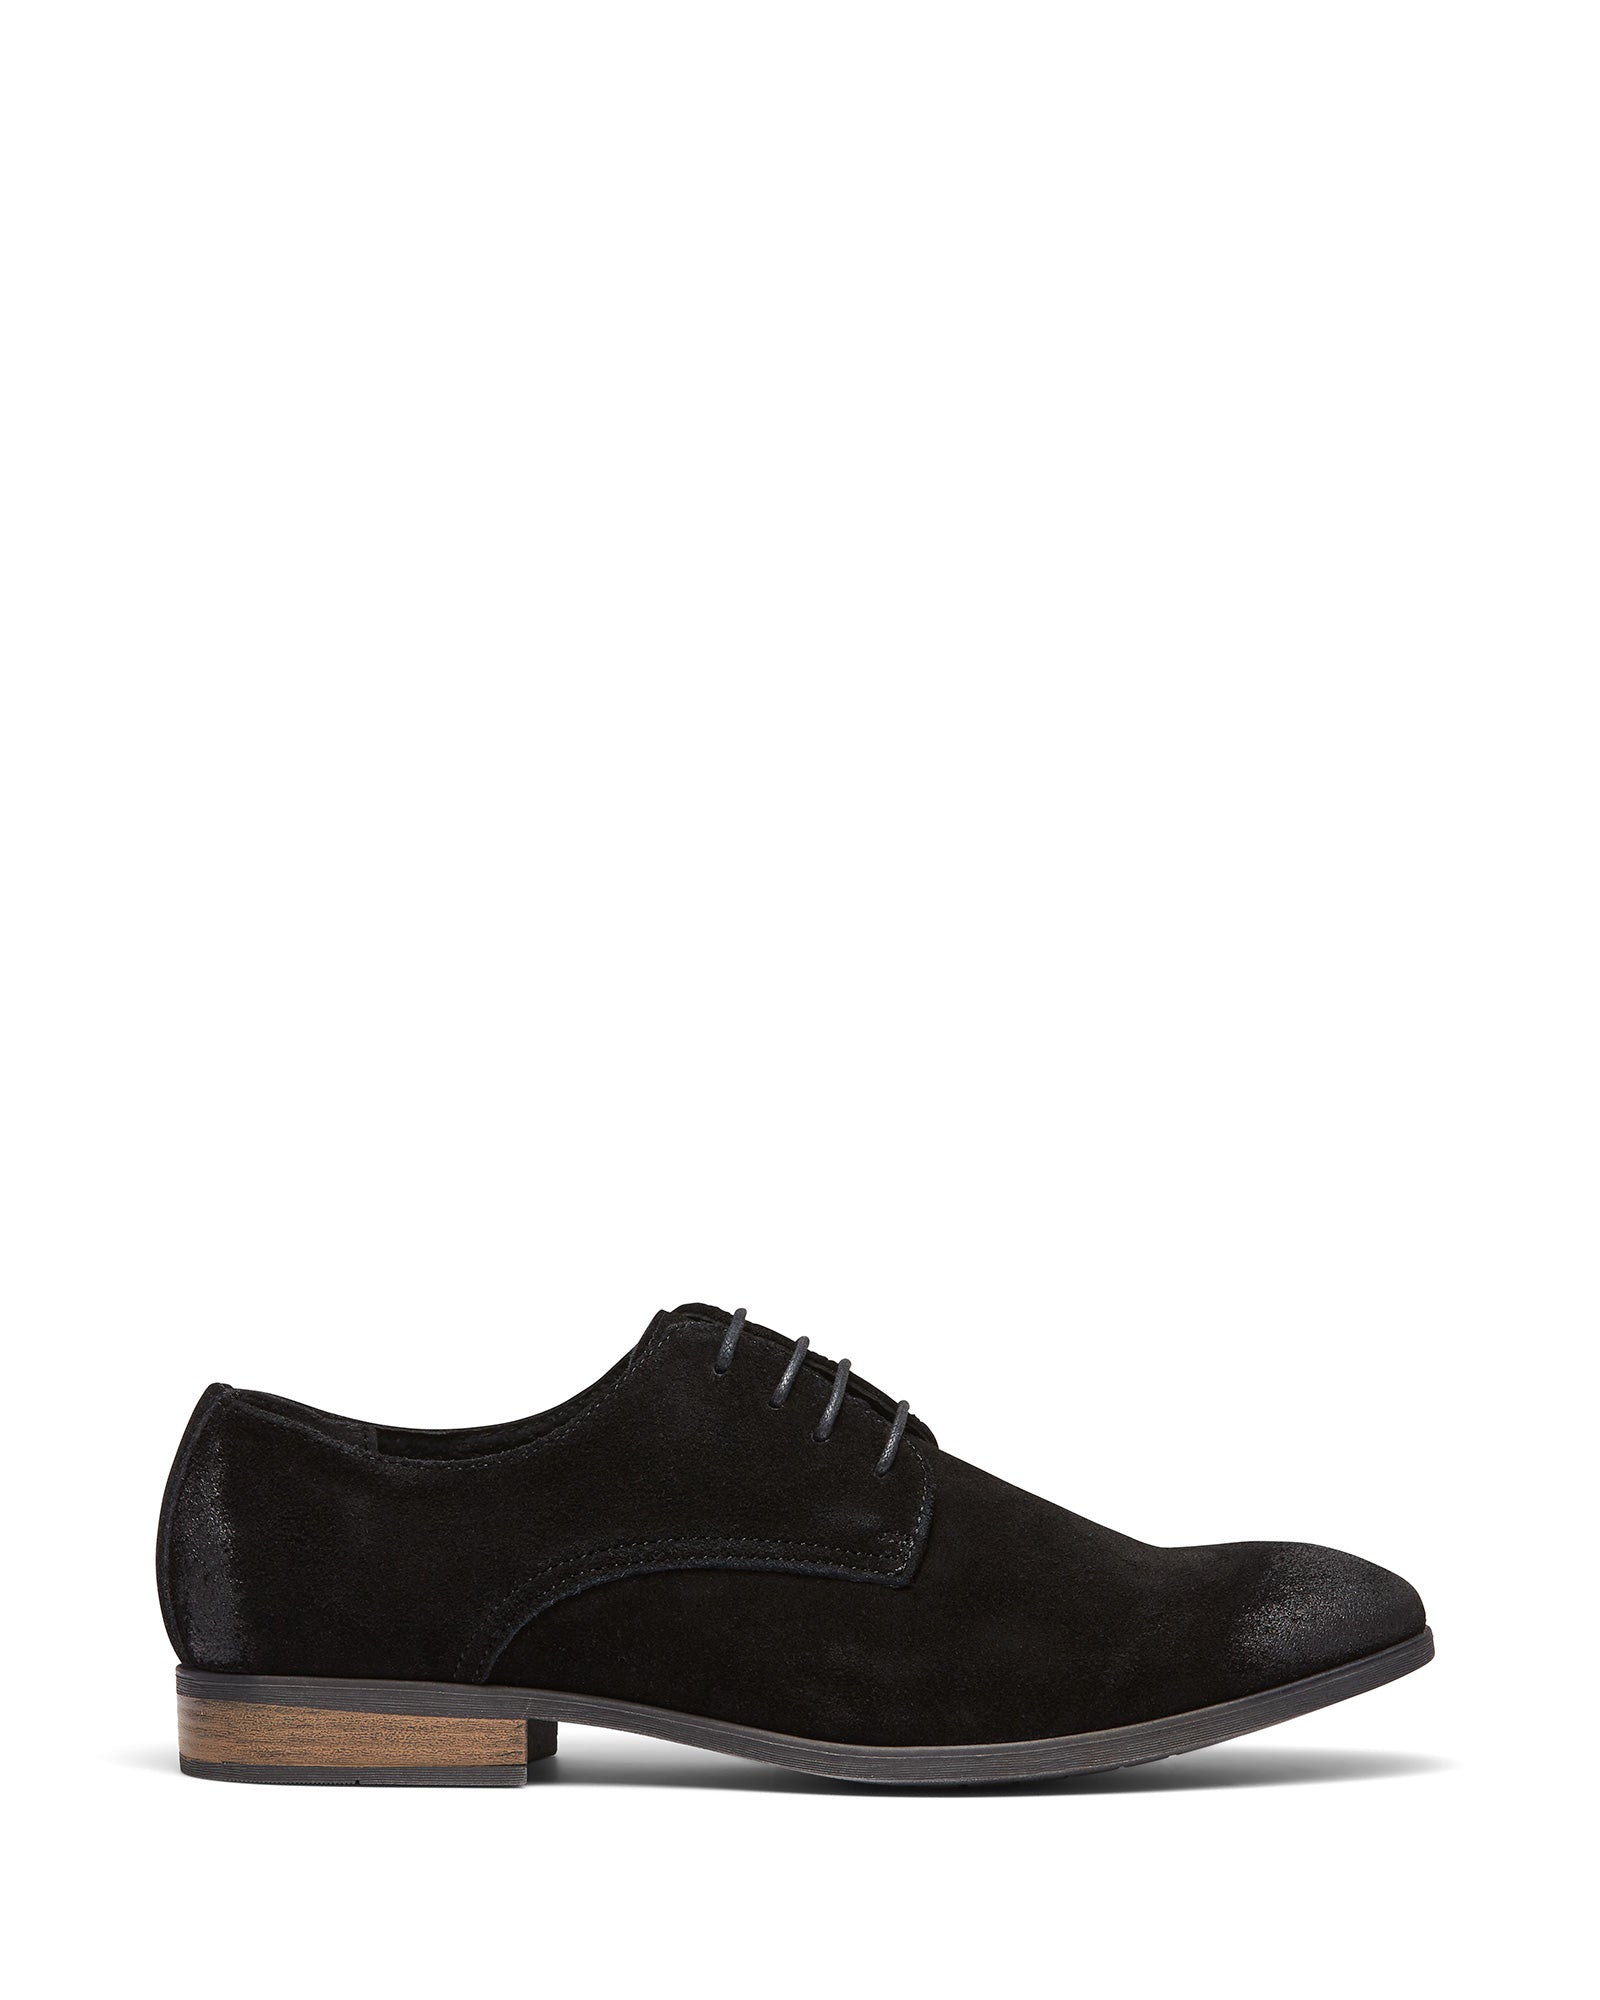 Uncut Shoes Tremblant Black | Men's Leather Dress Shoe | Derby | Lace Up 